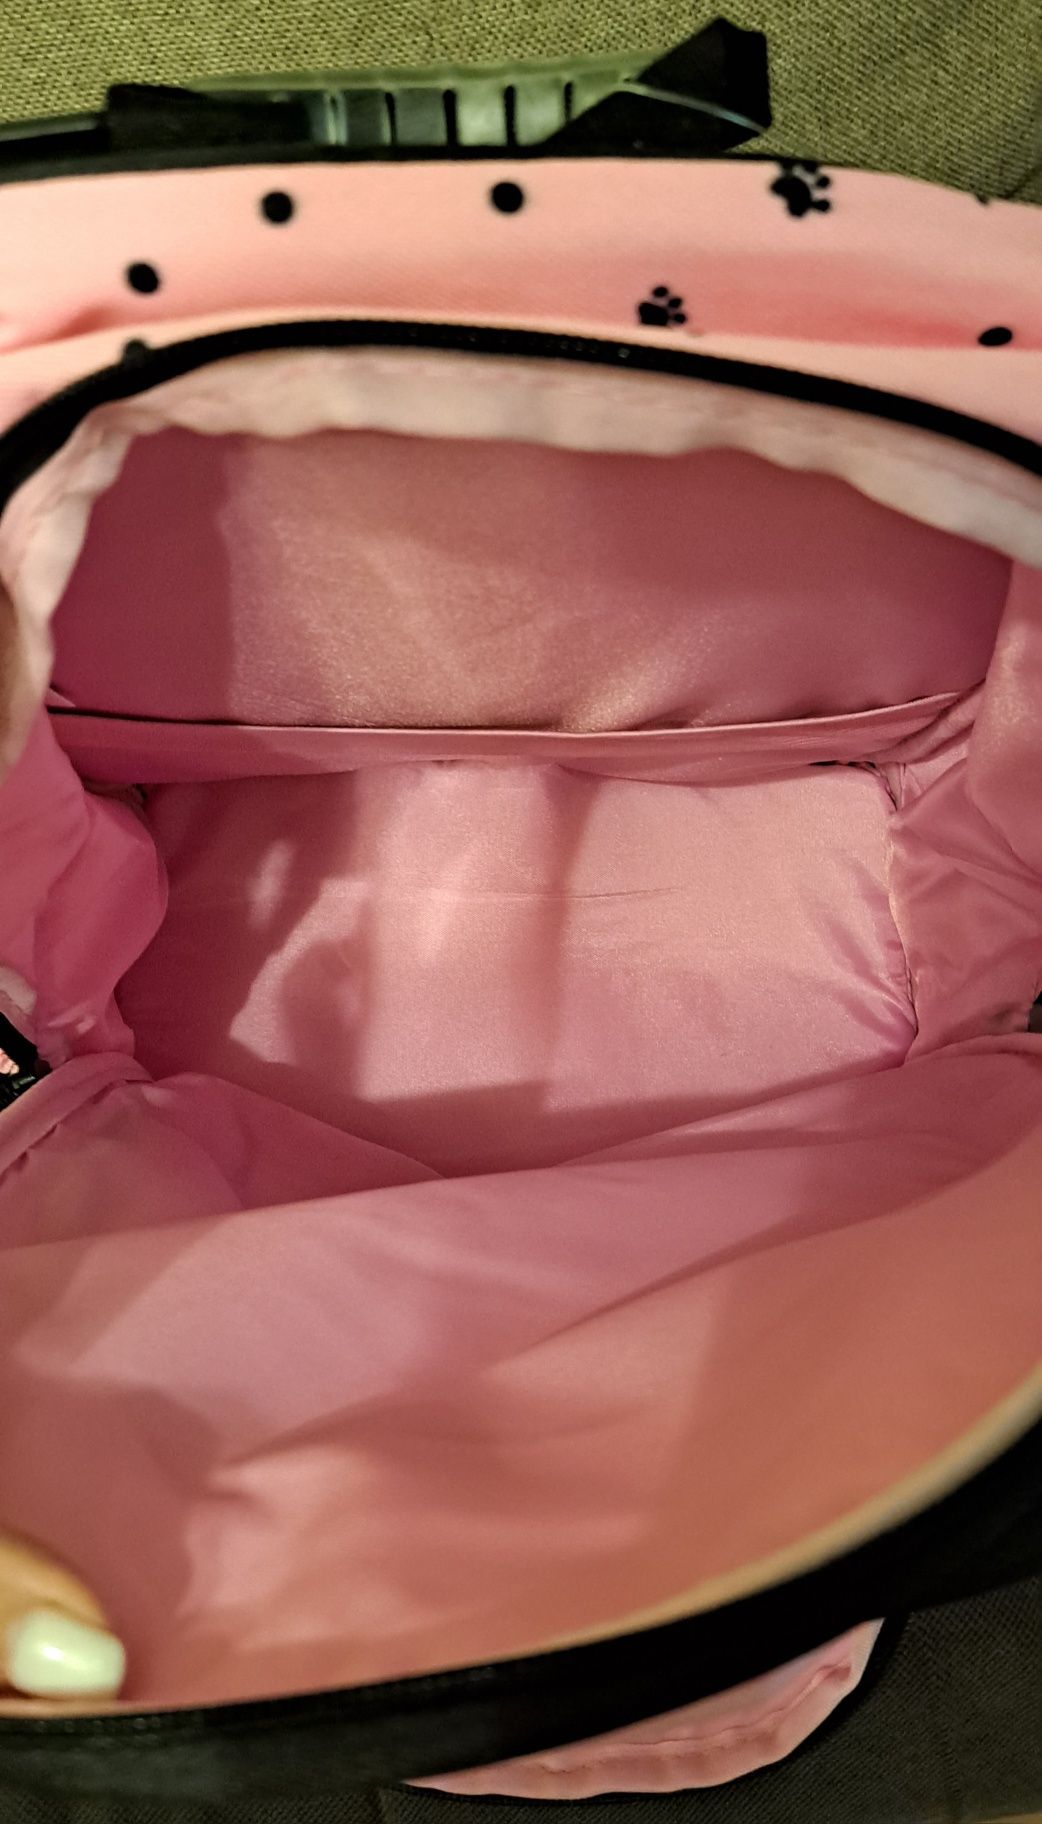 Ортопедичний рюкзак, шкільний,  Hama для дівчаток